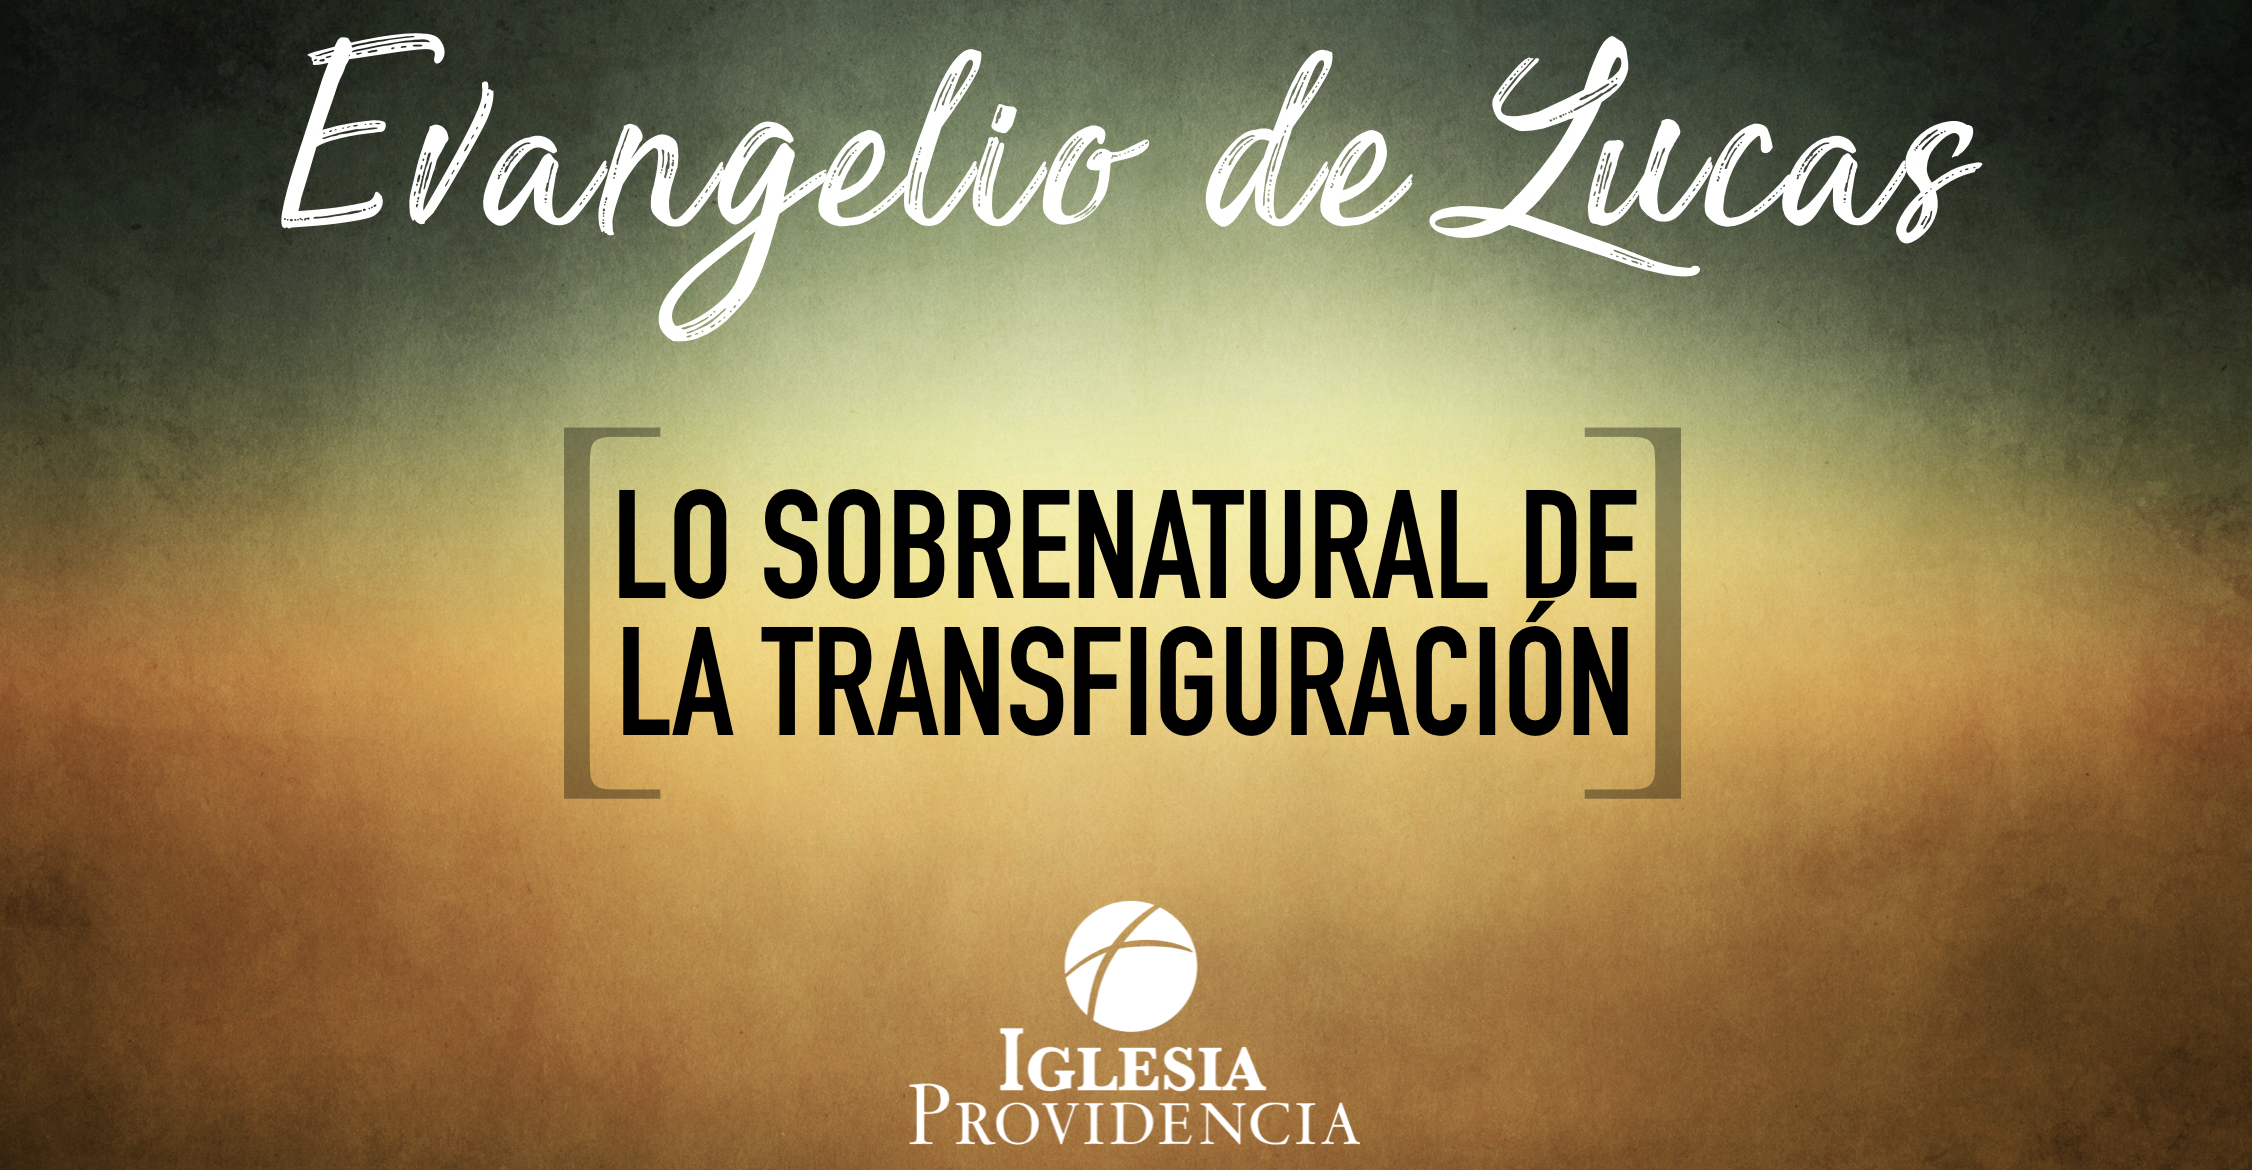 Lo sobrenatural de la transfiguración